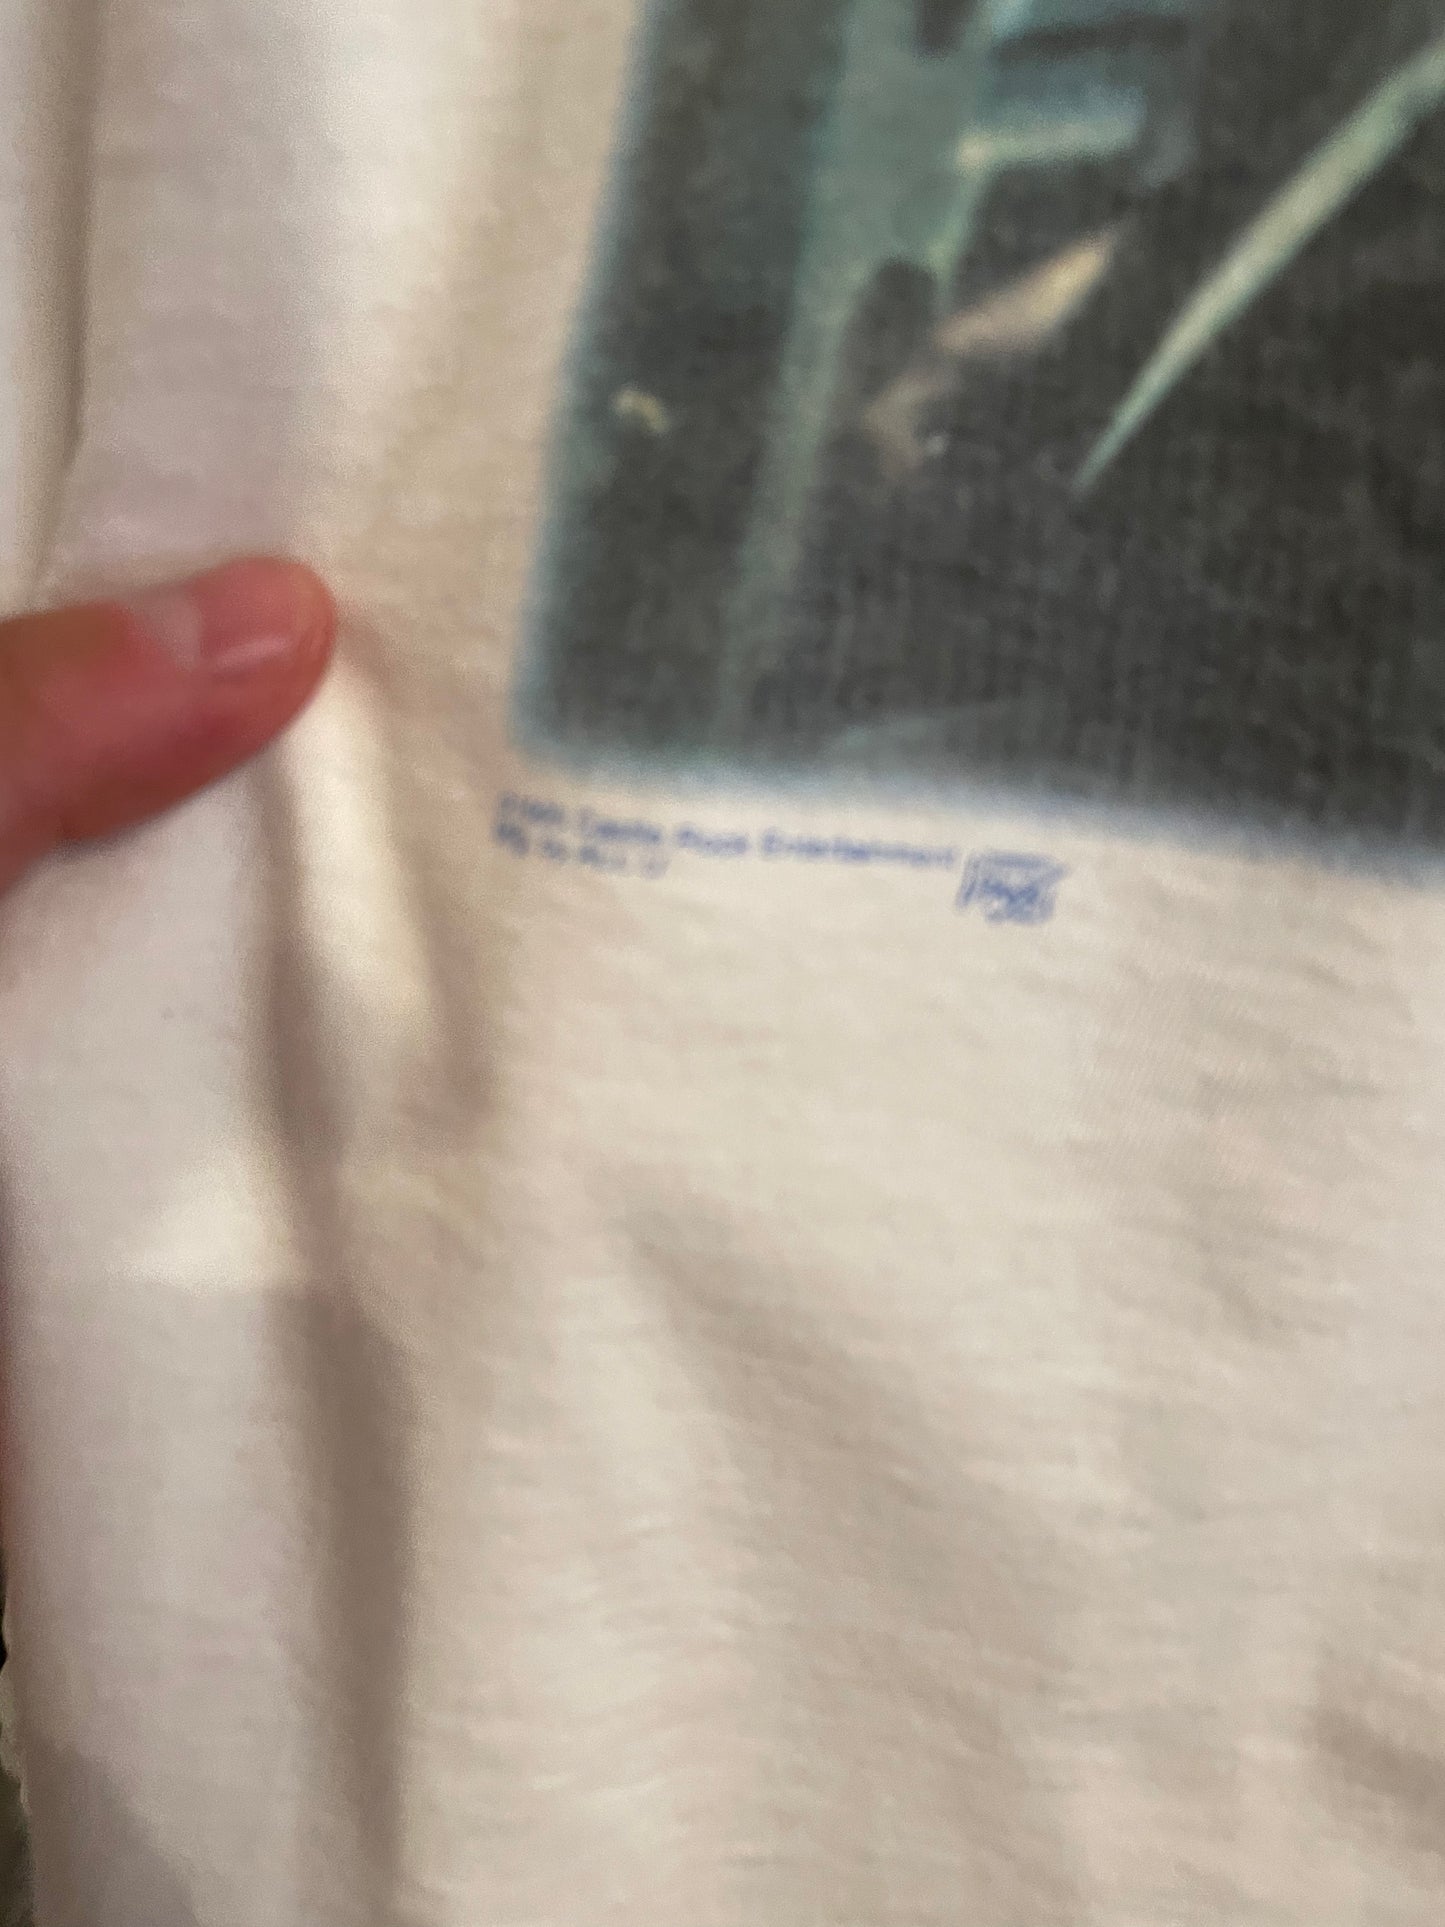 1995 Seinfeld Kramer The K Man T-Shirt Size XL